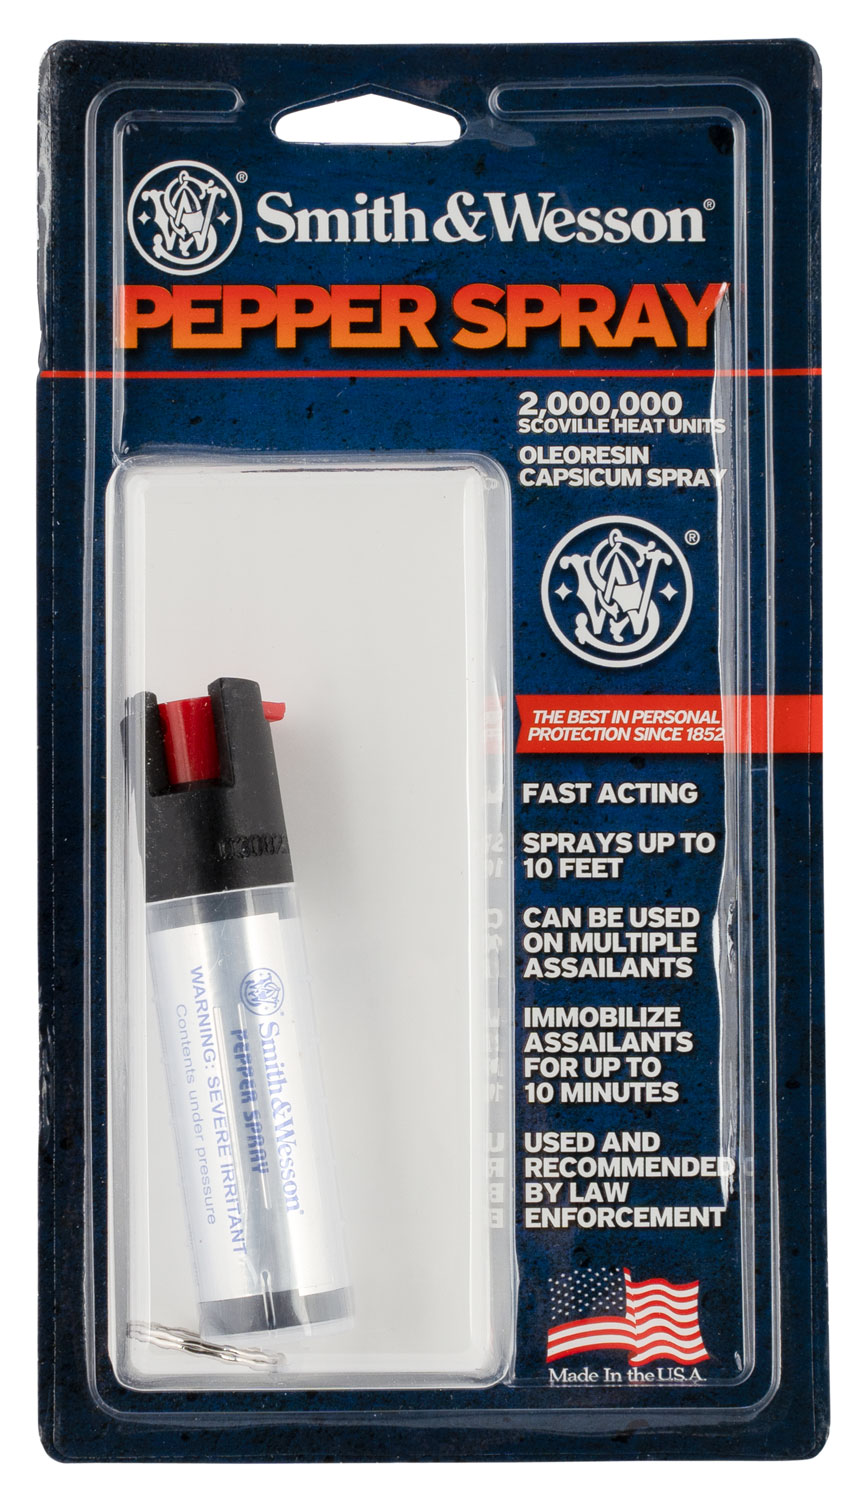 s-w-pepper-spray-1251-pepper-spray-75-oz-oc-pepper-10-ft-range-with